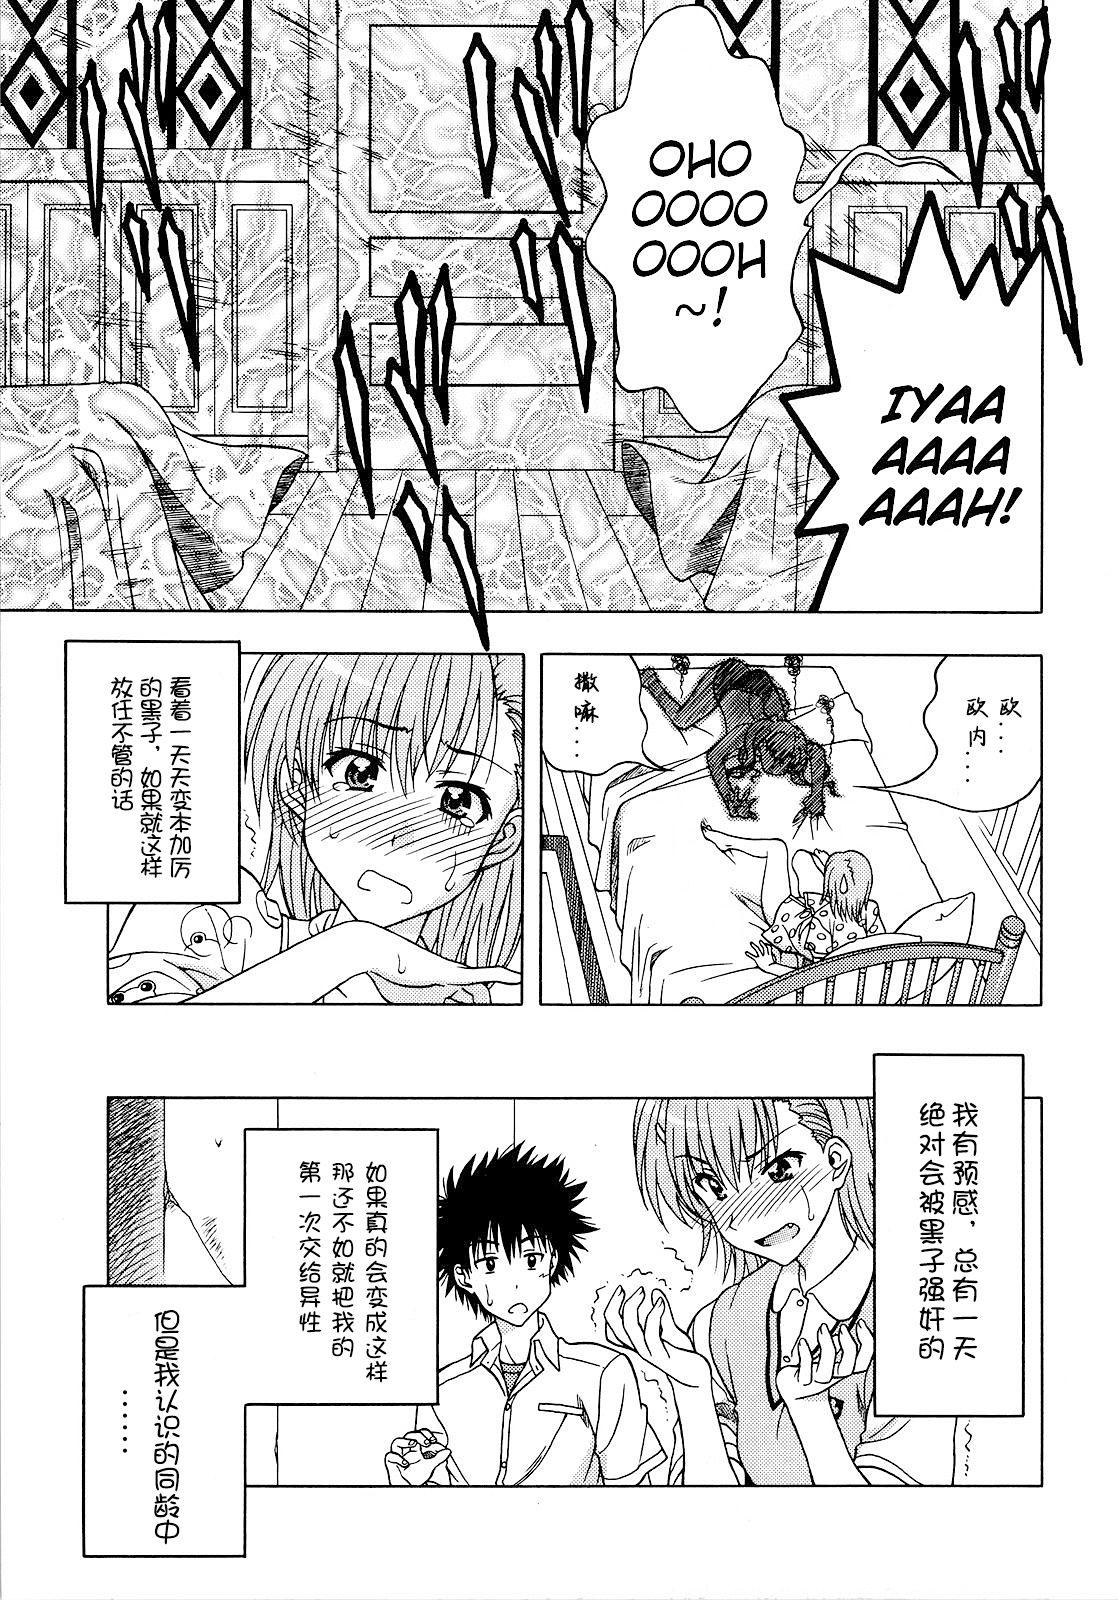 Breasts Biridere! - Toaru kagaku no railgun | a certain scientific railgun Stream - Page 8